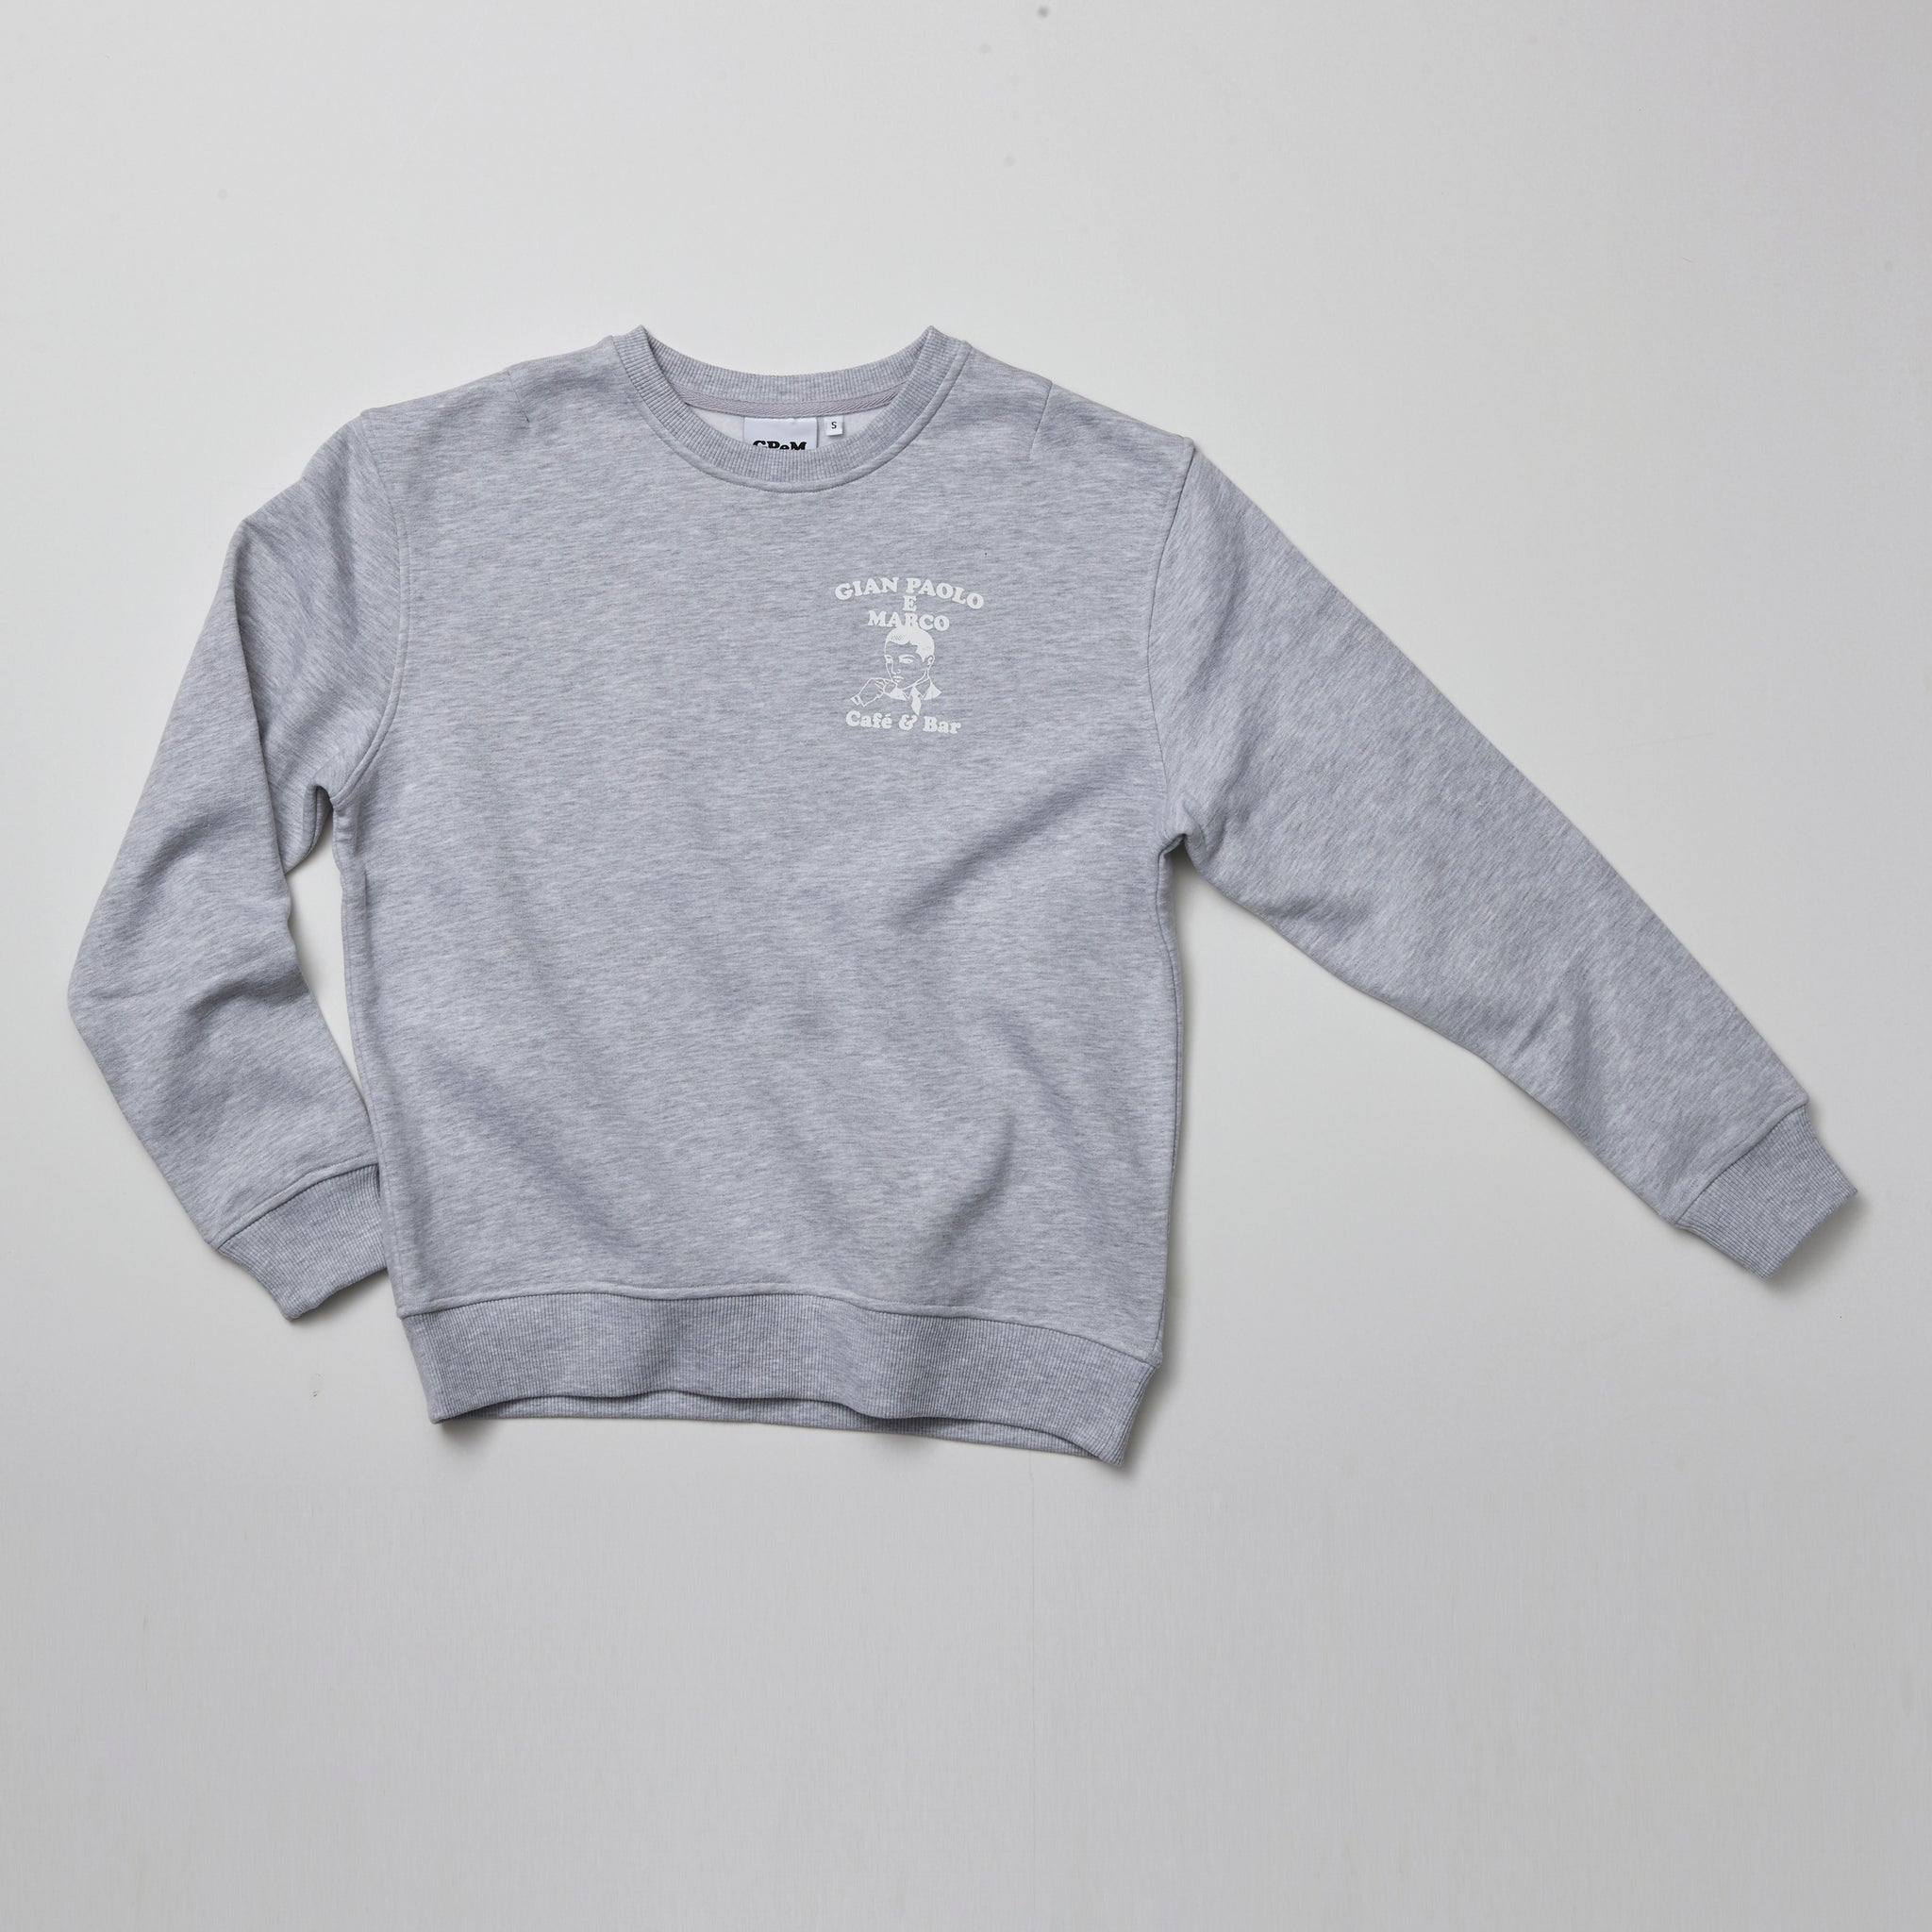 GPeM Sweater front/ back Print